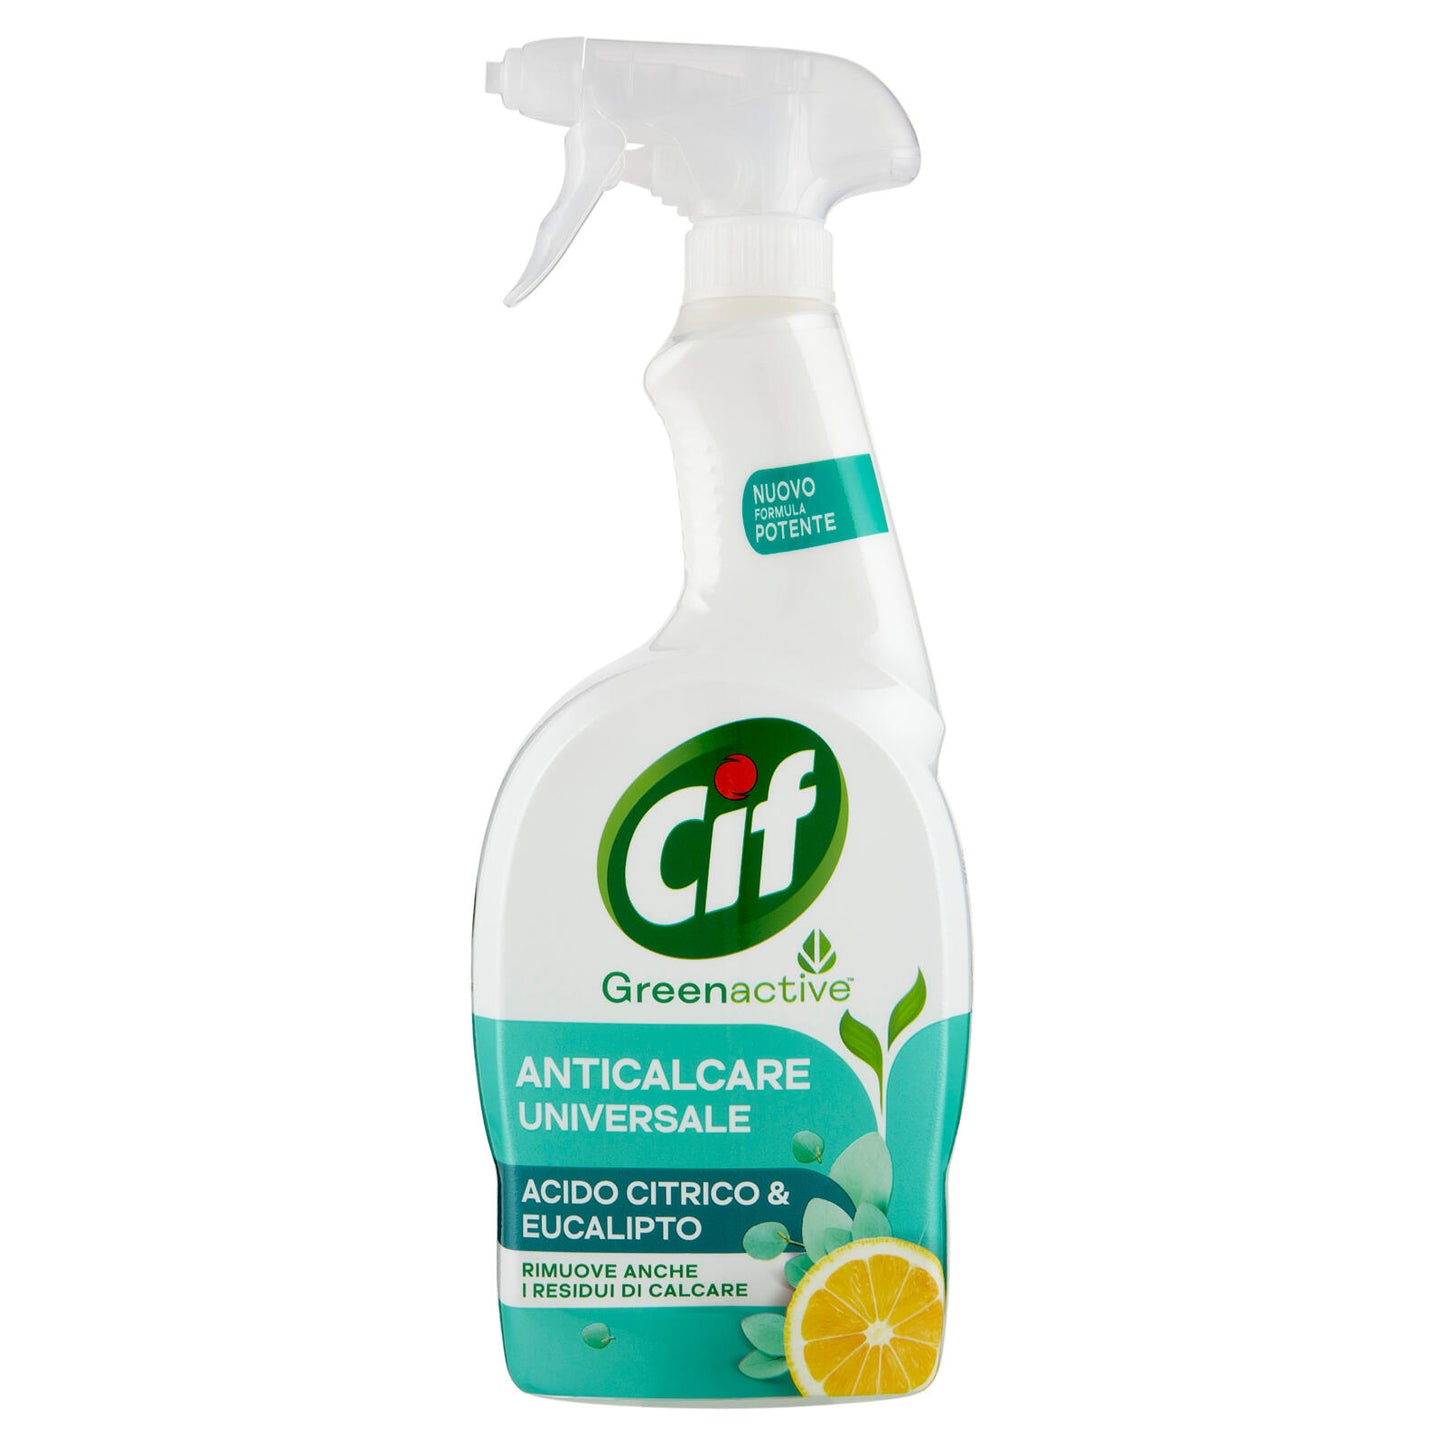 Cif Greenactive Anticalcare Universale Acido Citrico & Eucalipto 650 ml